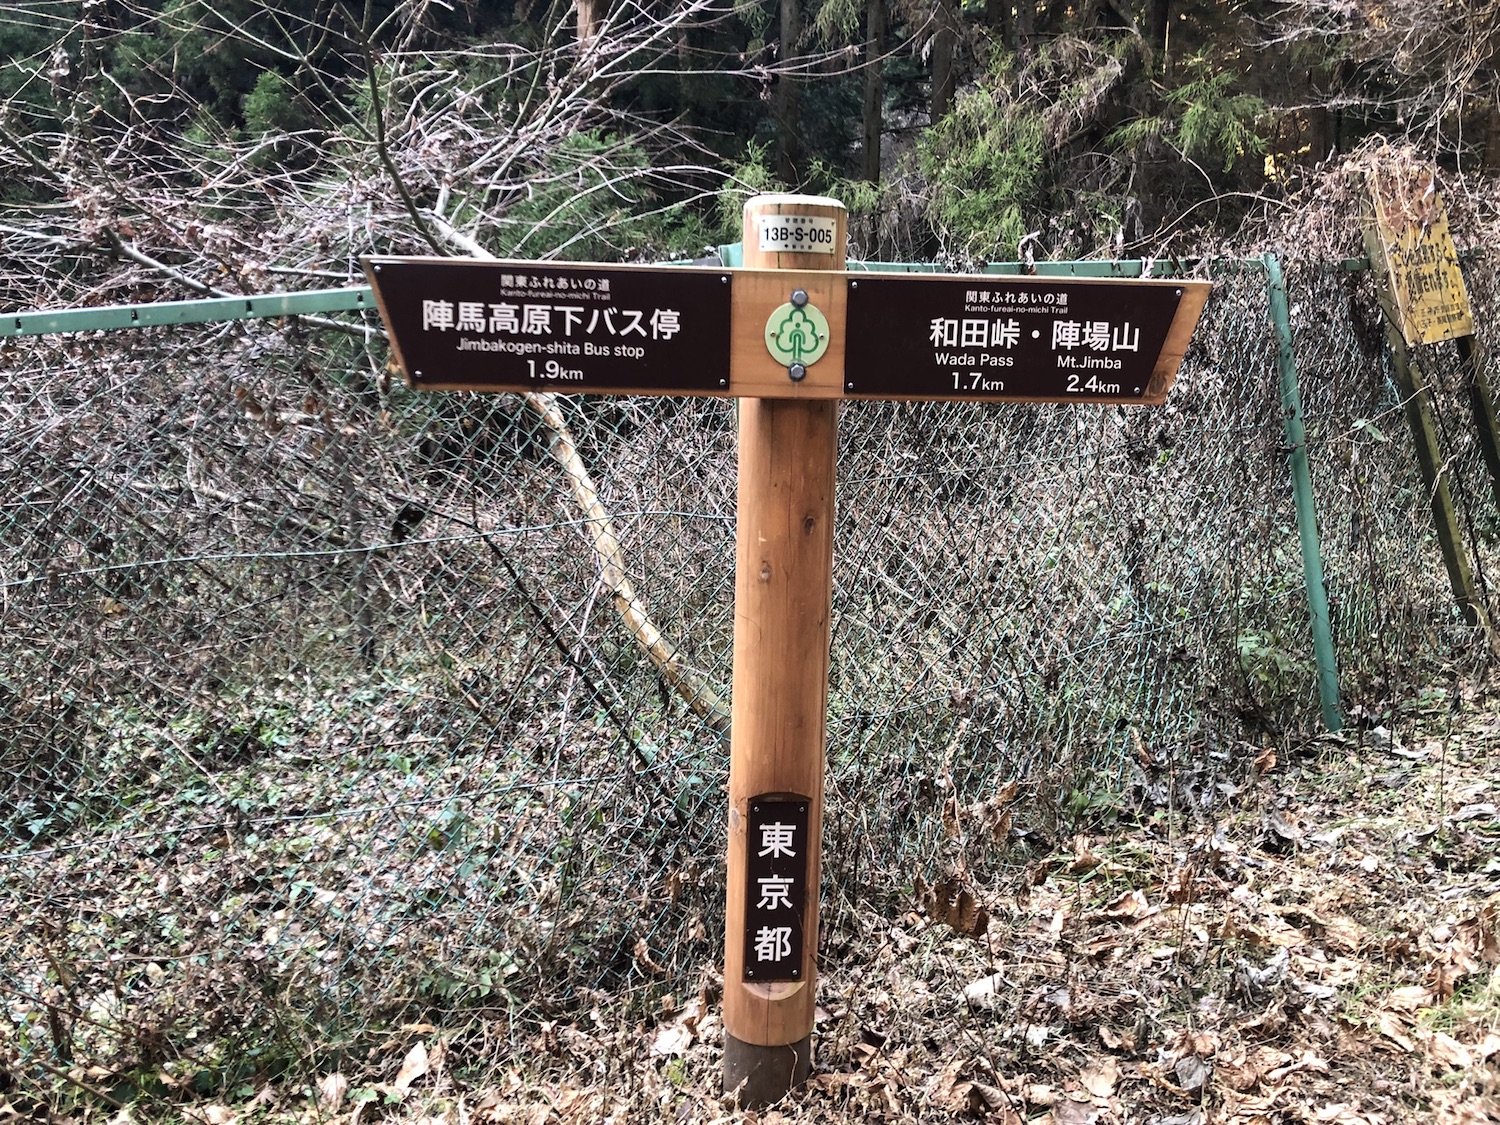 和田峠までの距離標示。